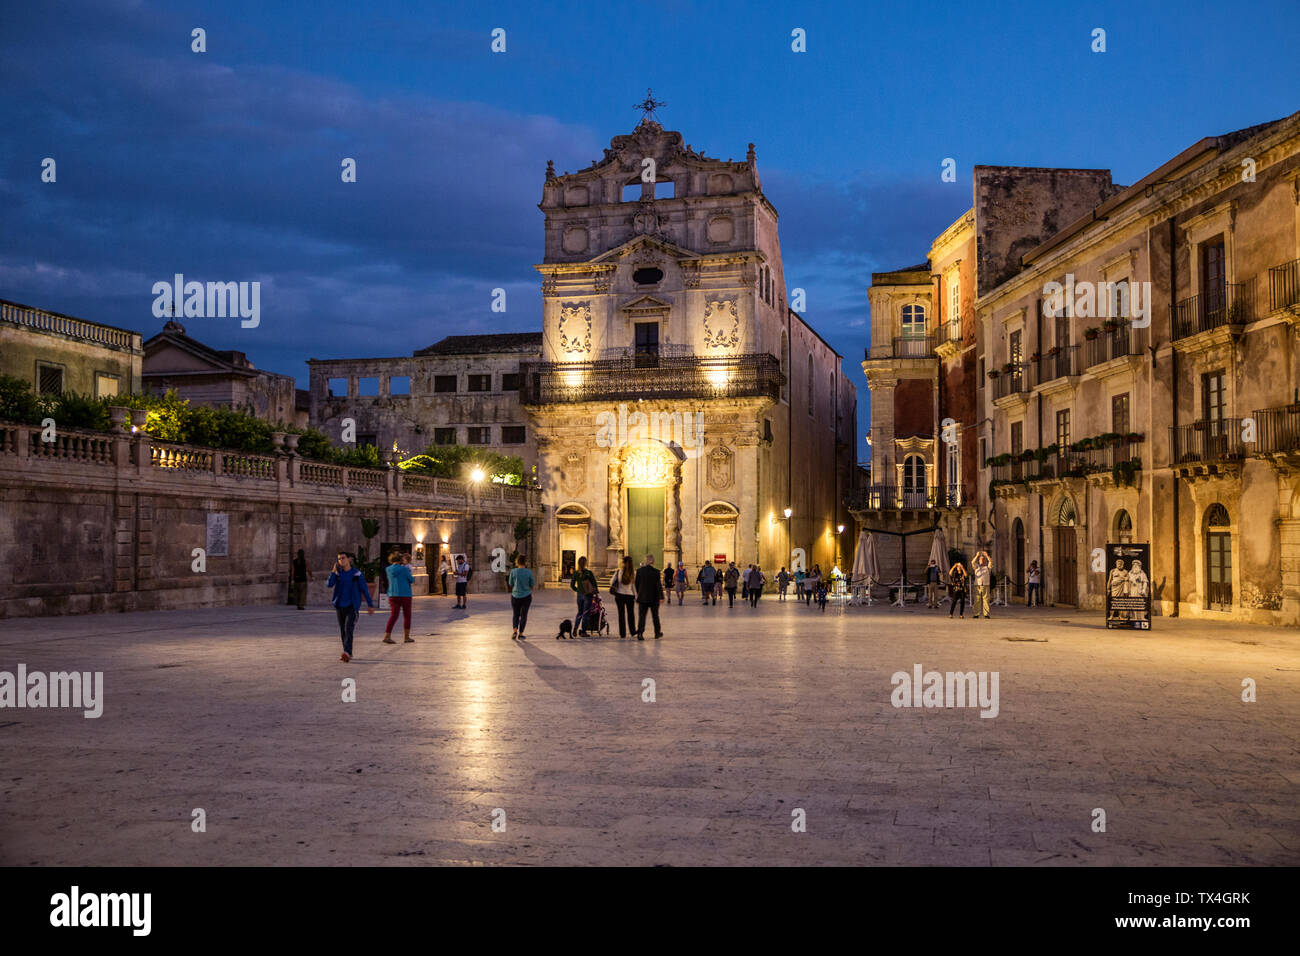 Italy, Sicily, Ortygia, Syracuse, baroque church Santa Lucia alla Badia at dusk Stock Photo